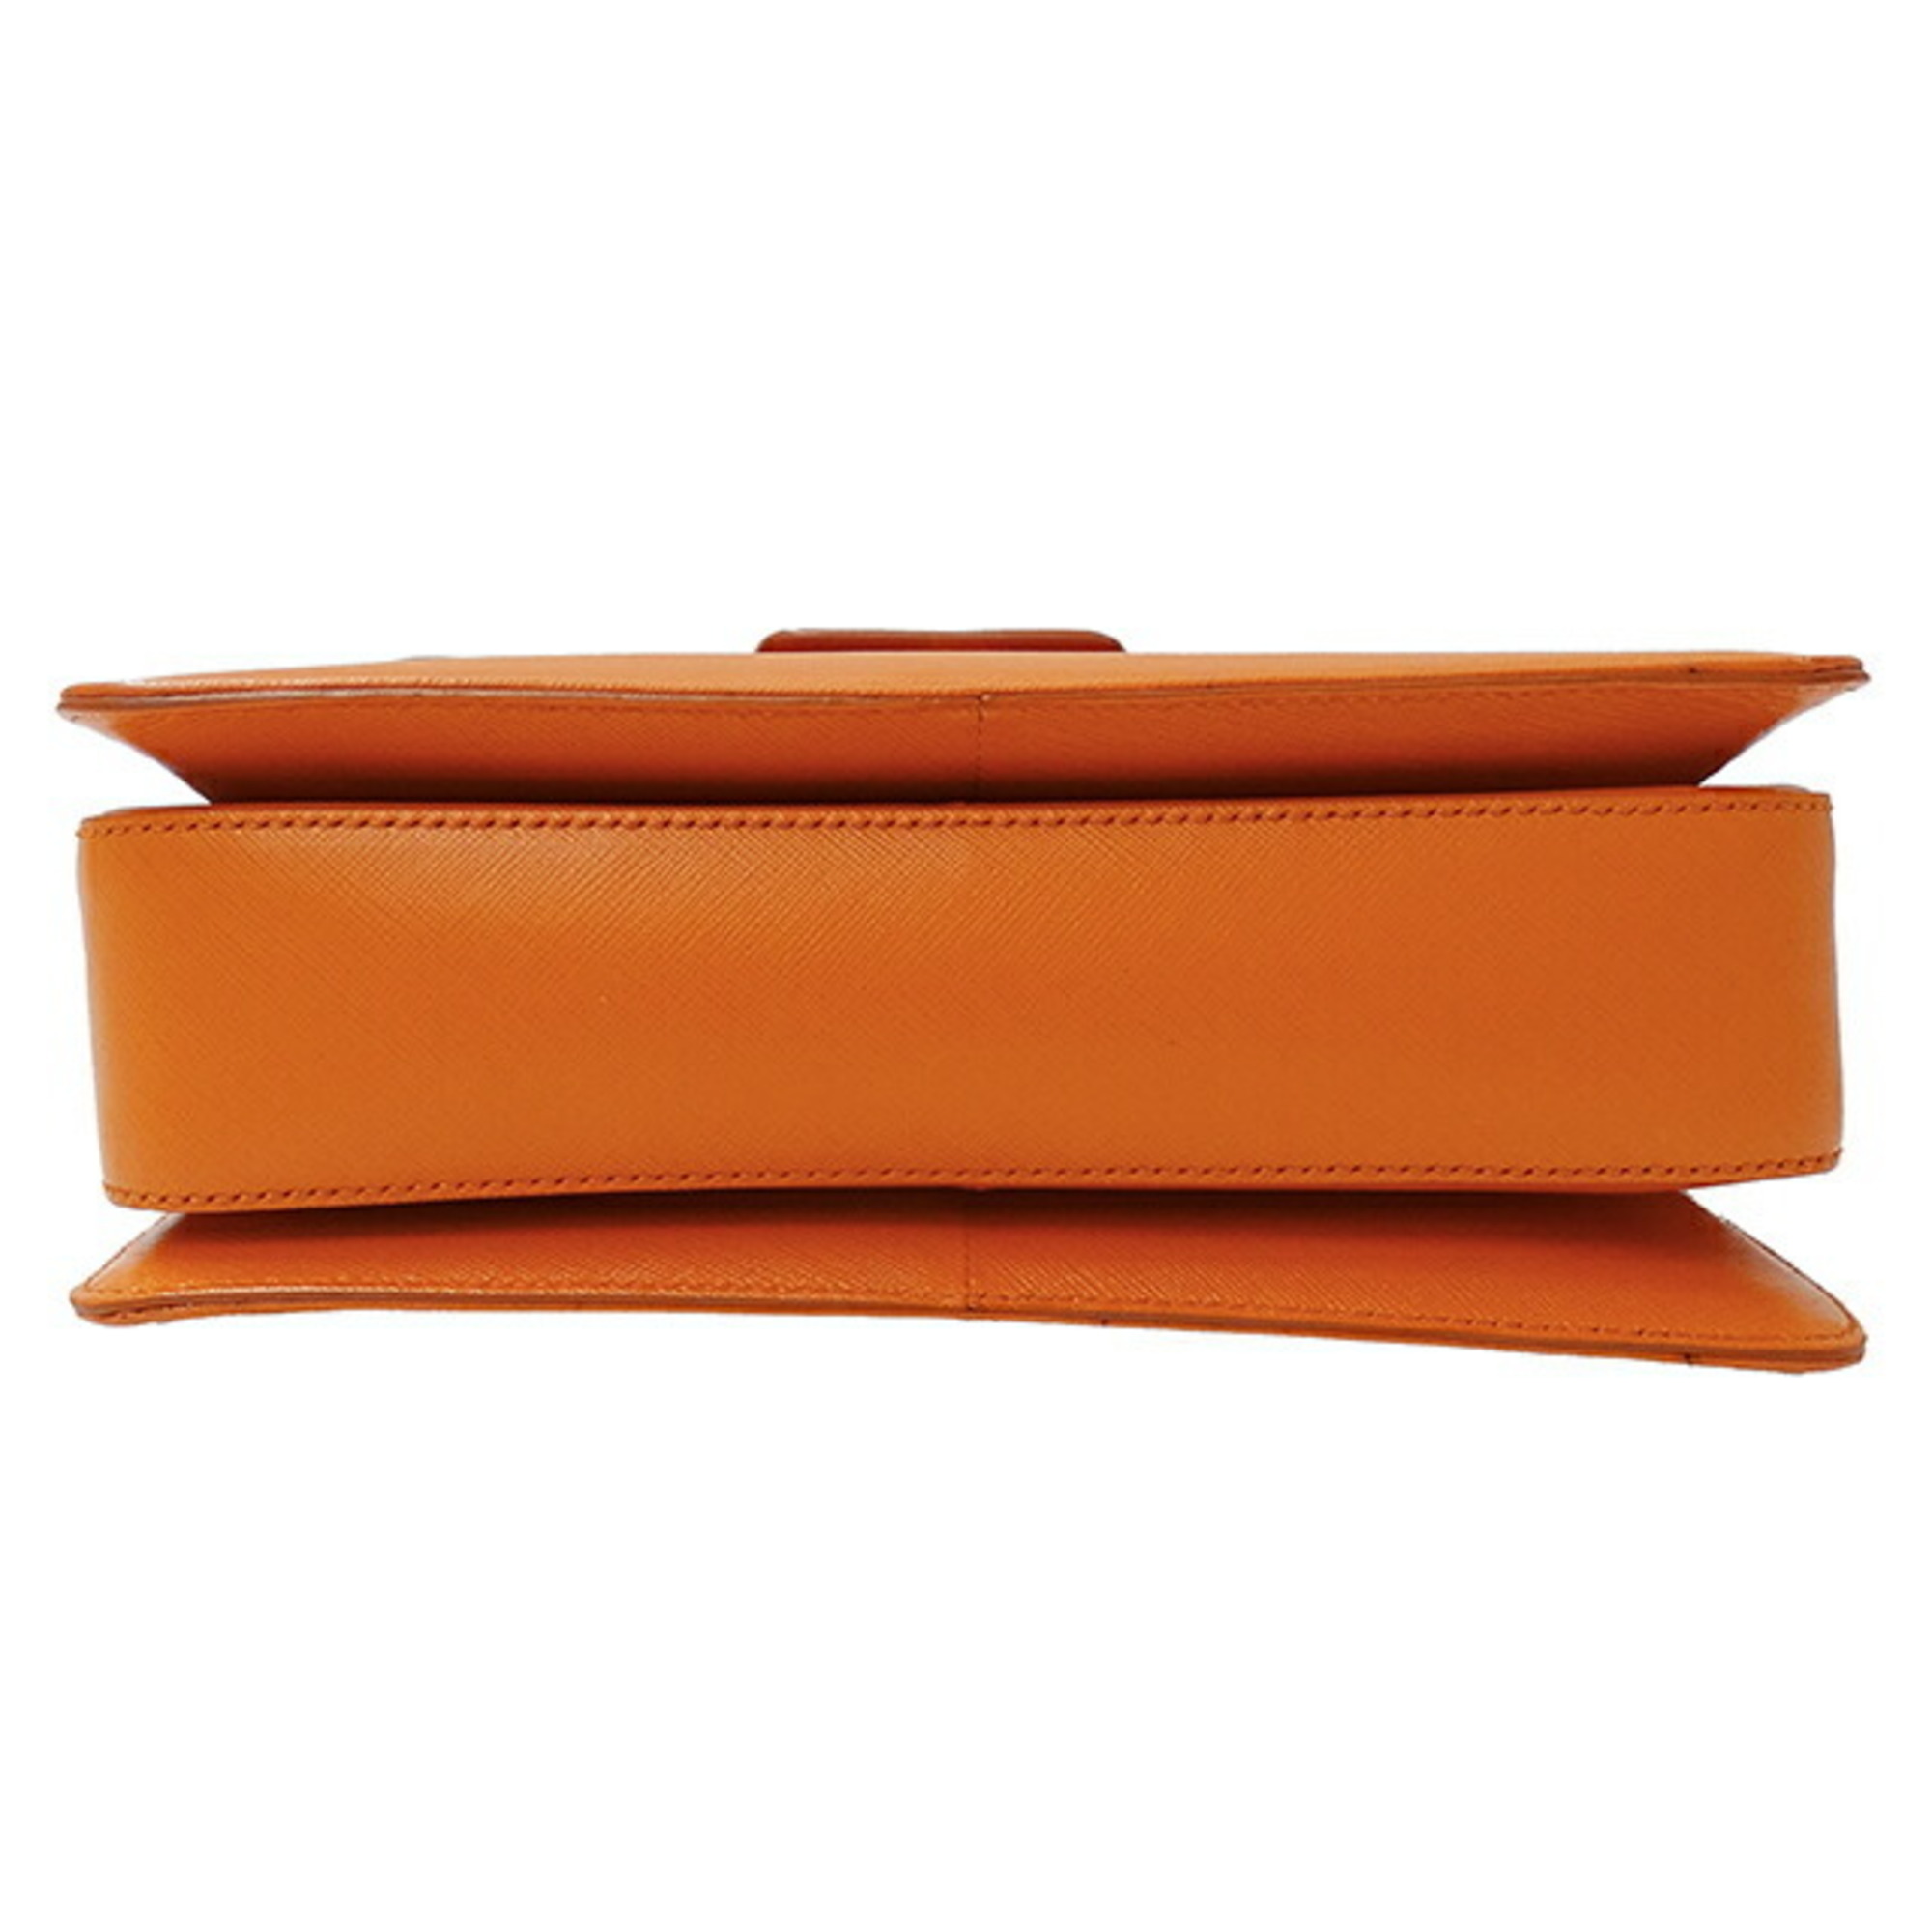 Salvatore Ferragamo Ferragamo Bag Women's Brand W Gancini Handbag Shoulder 2way Leather Orange